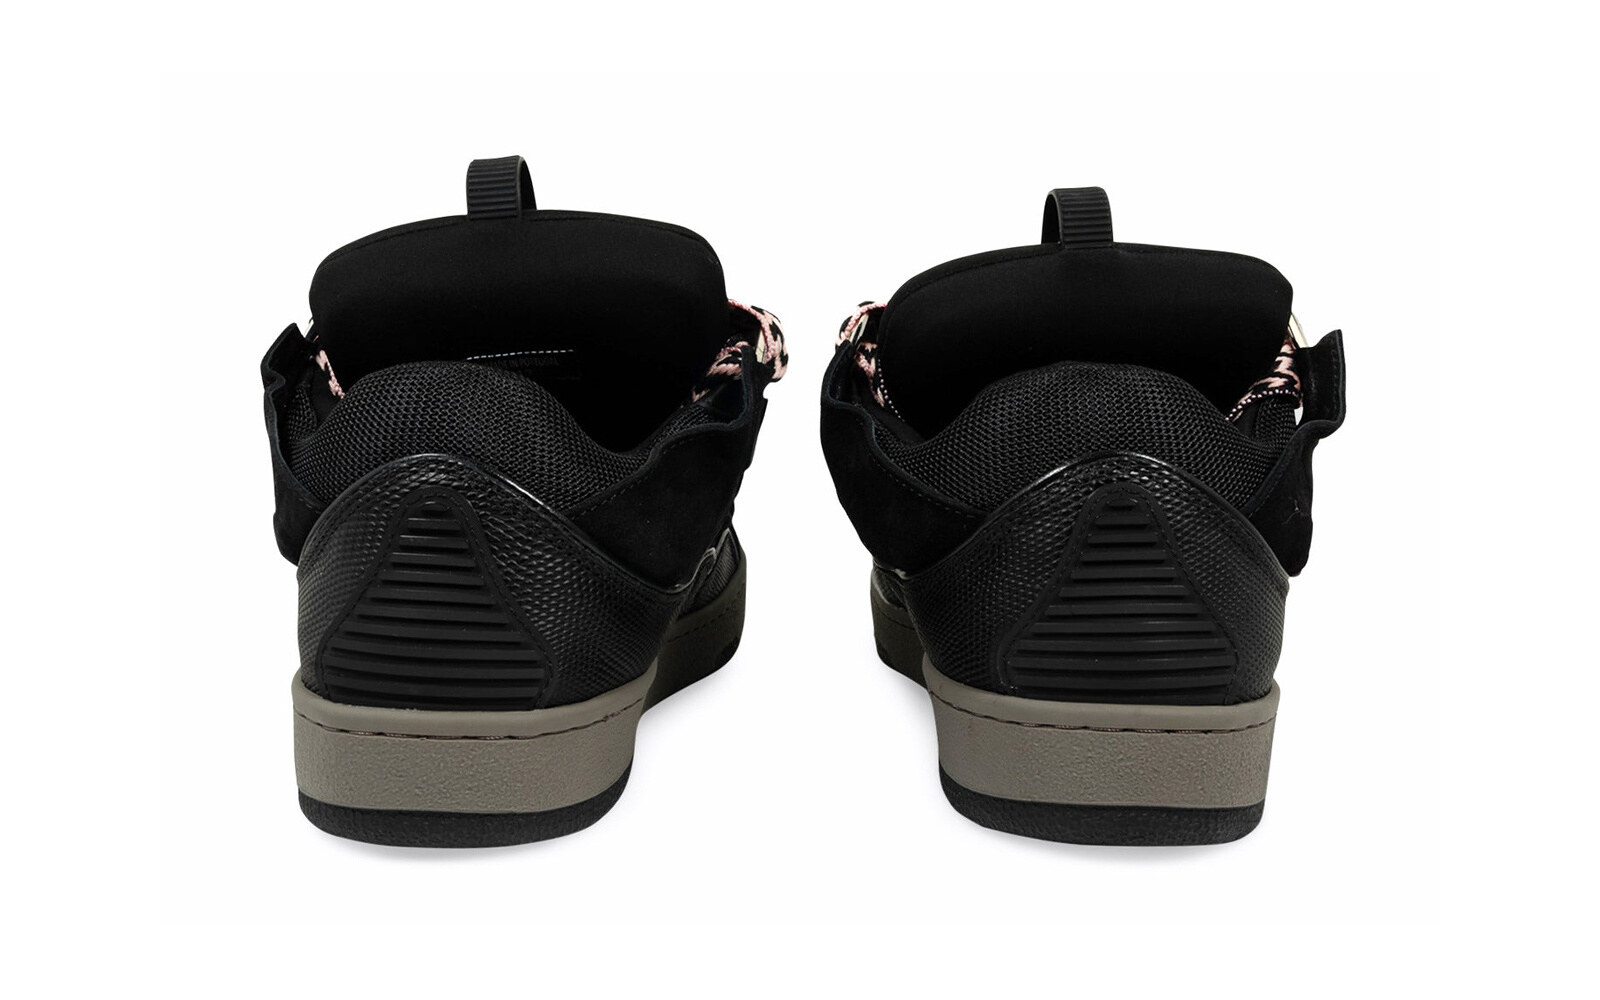 A Ma Maniu00e9re Lanvin Leather Curb Sneakers